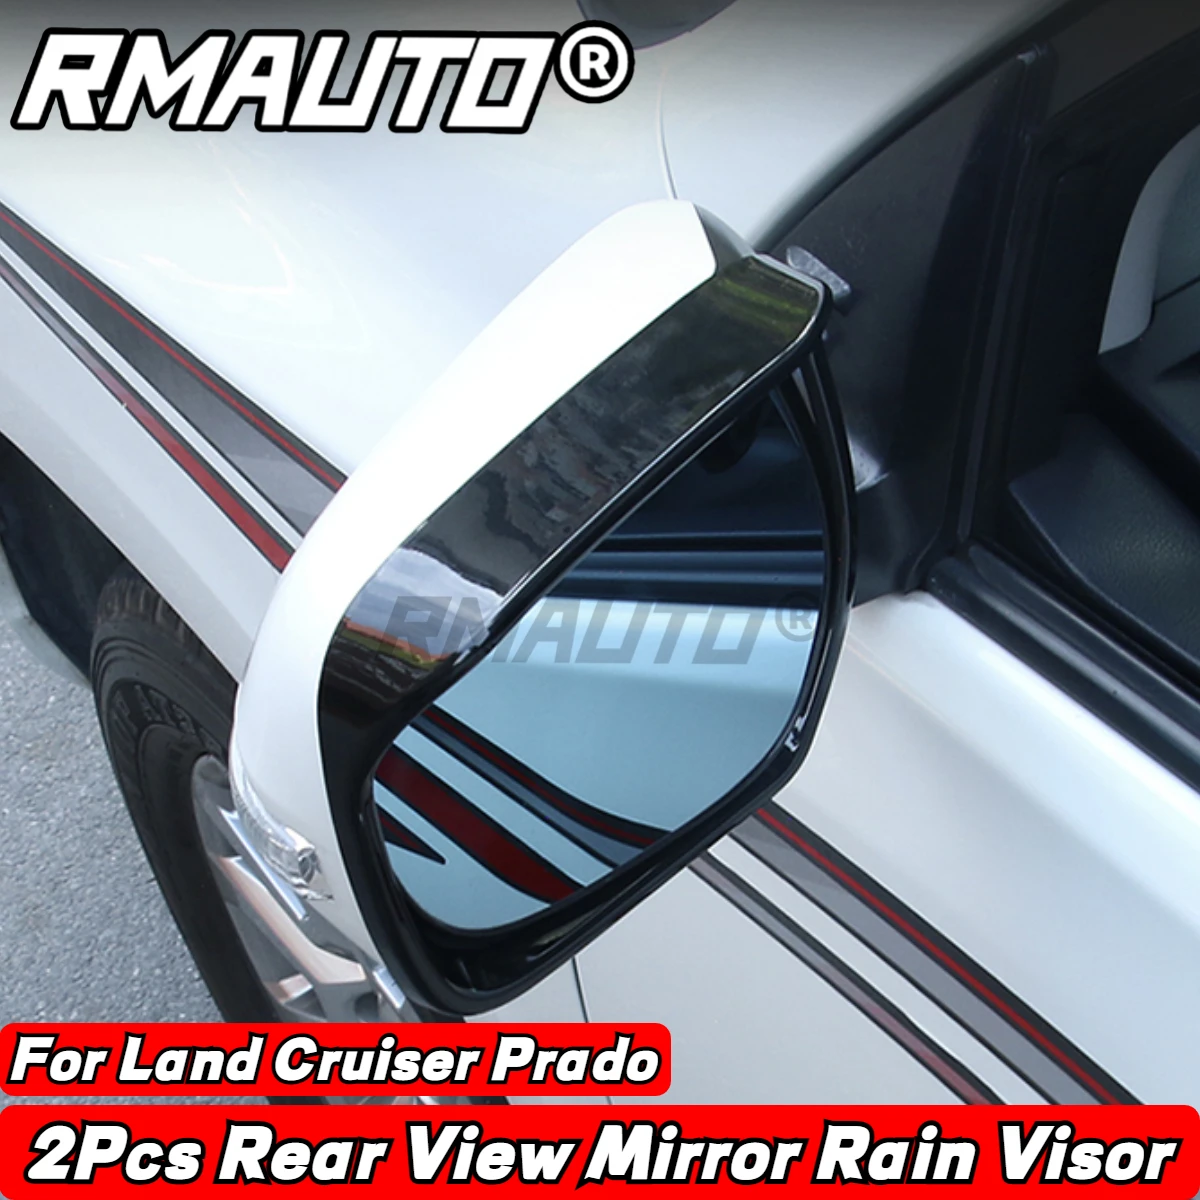 

RMAUTO Rear View Mirror Rain Visor Rain Cover Rain Eyebrow Shield For Toyota Land Cruiser 2008-2021 Prado 2010-2021 Accessories